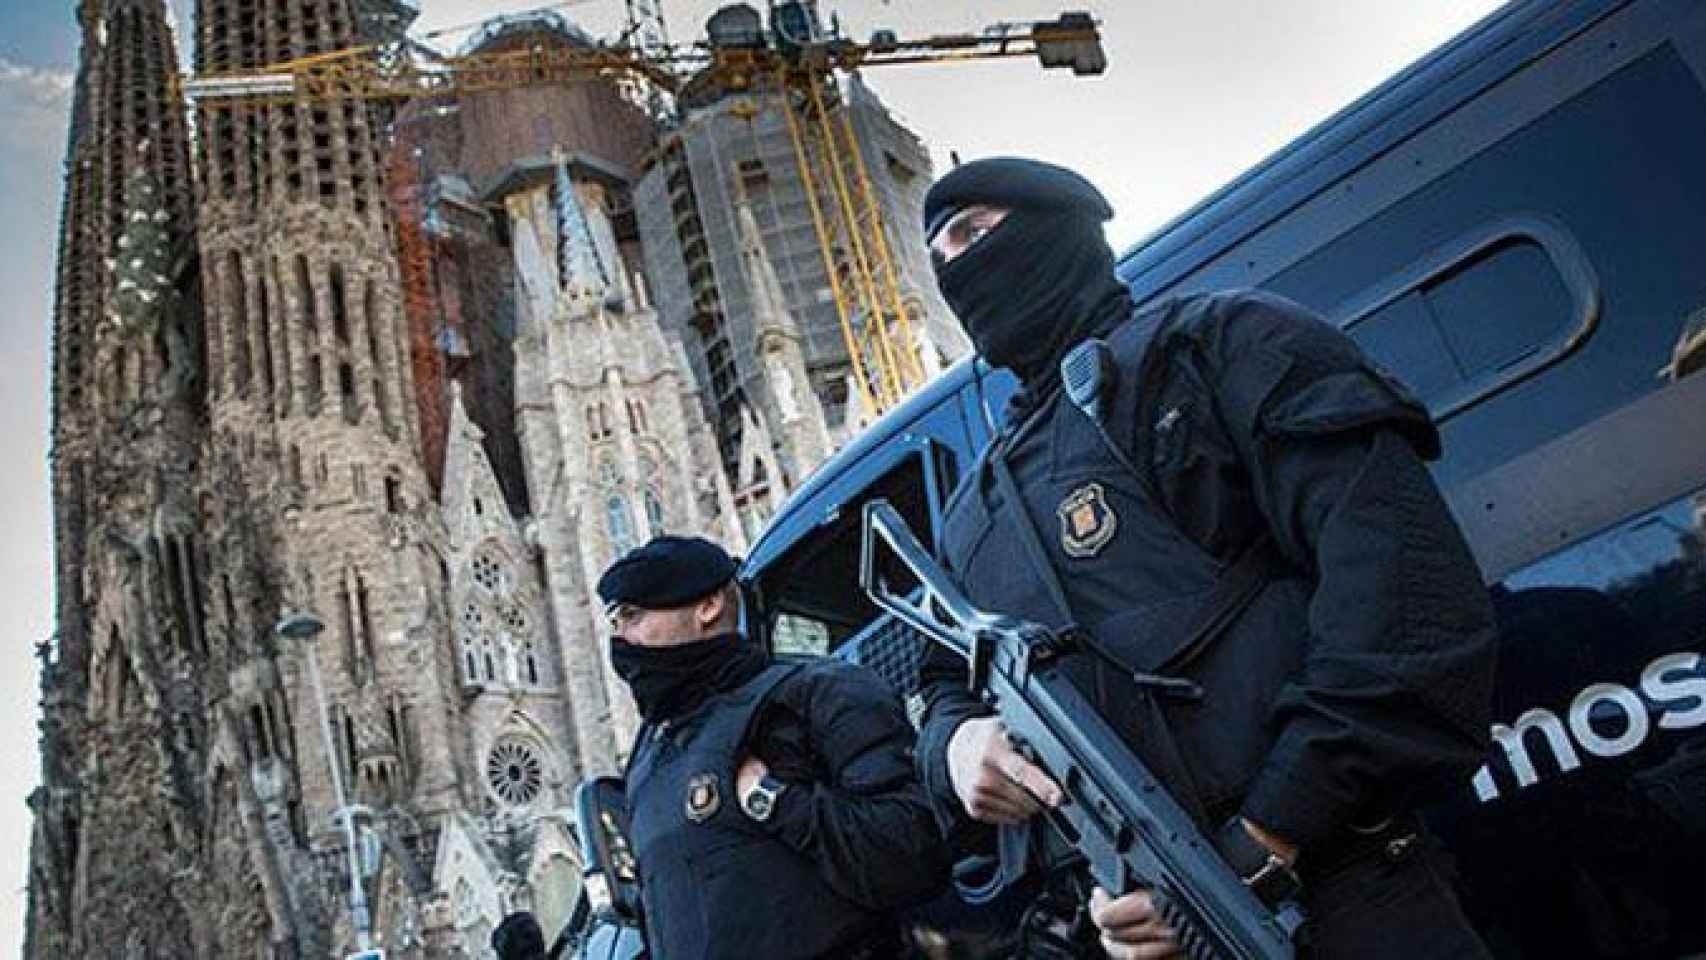 Imagen de Mossos d'Esquadra en un despliegue antiterrorista ante la Sagrada Familia / CG